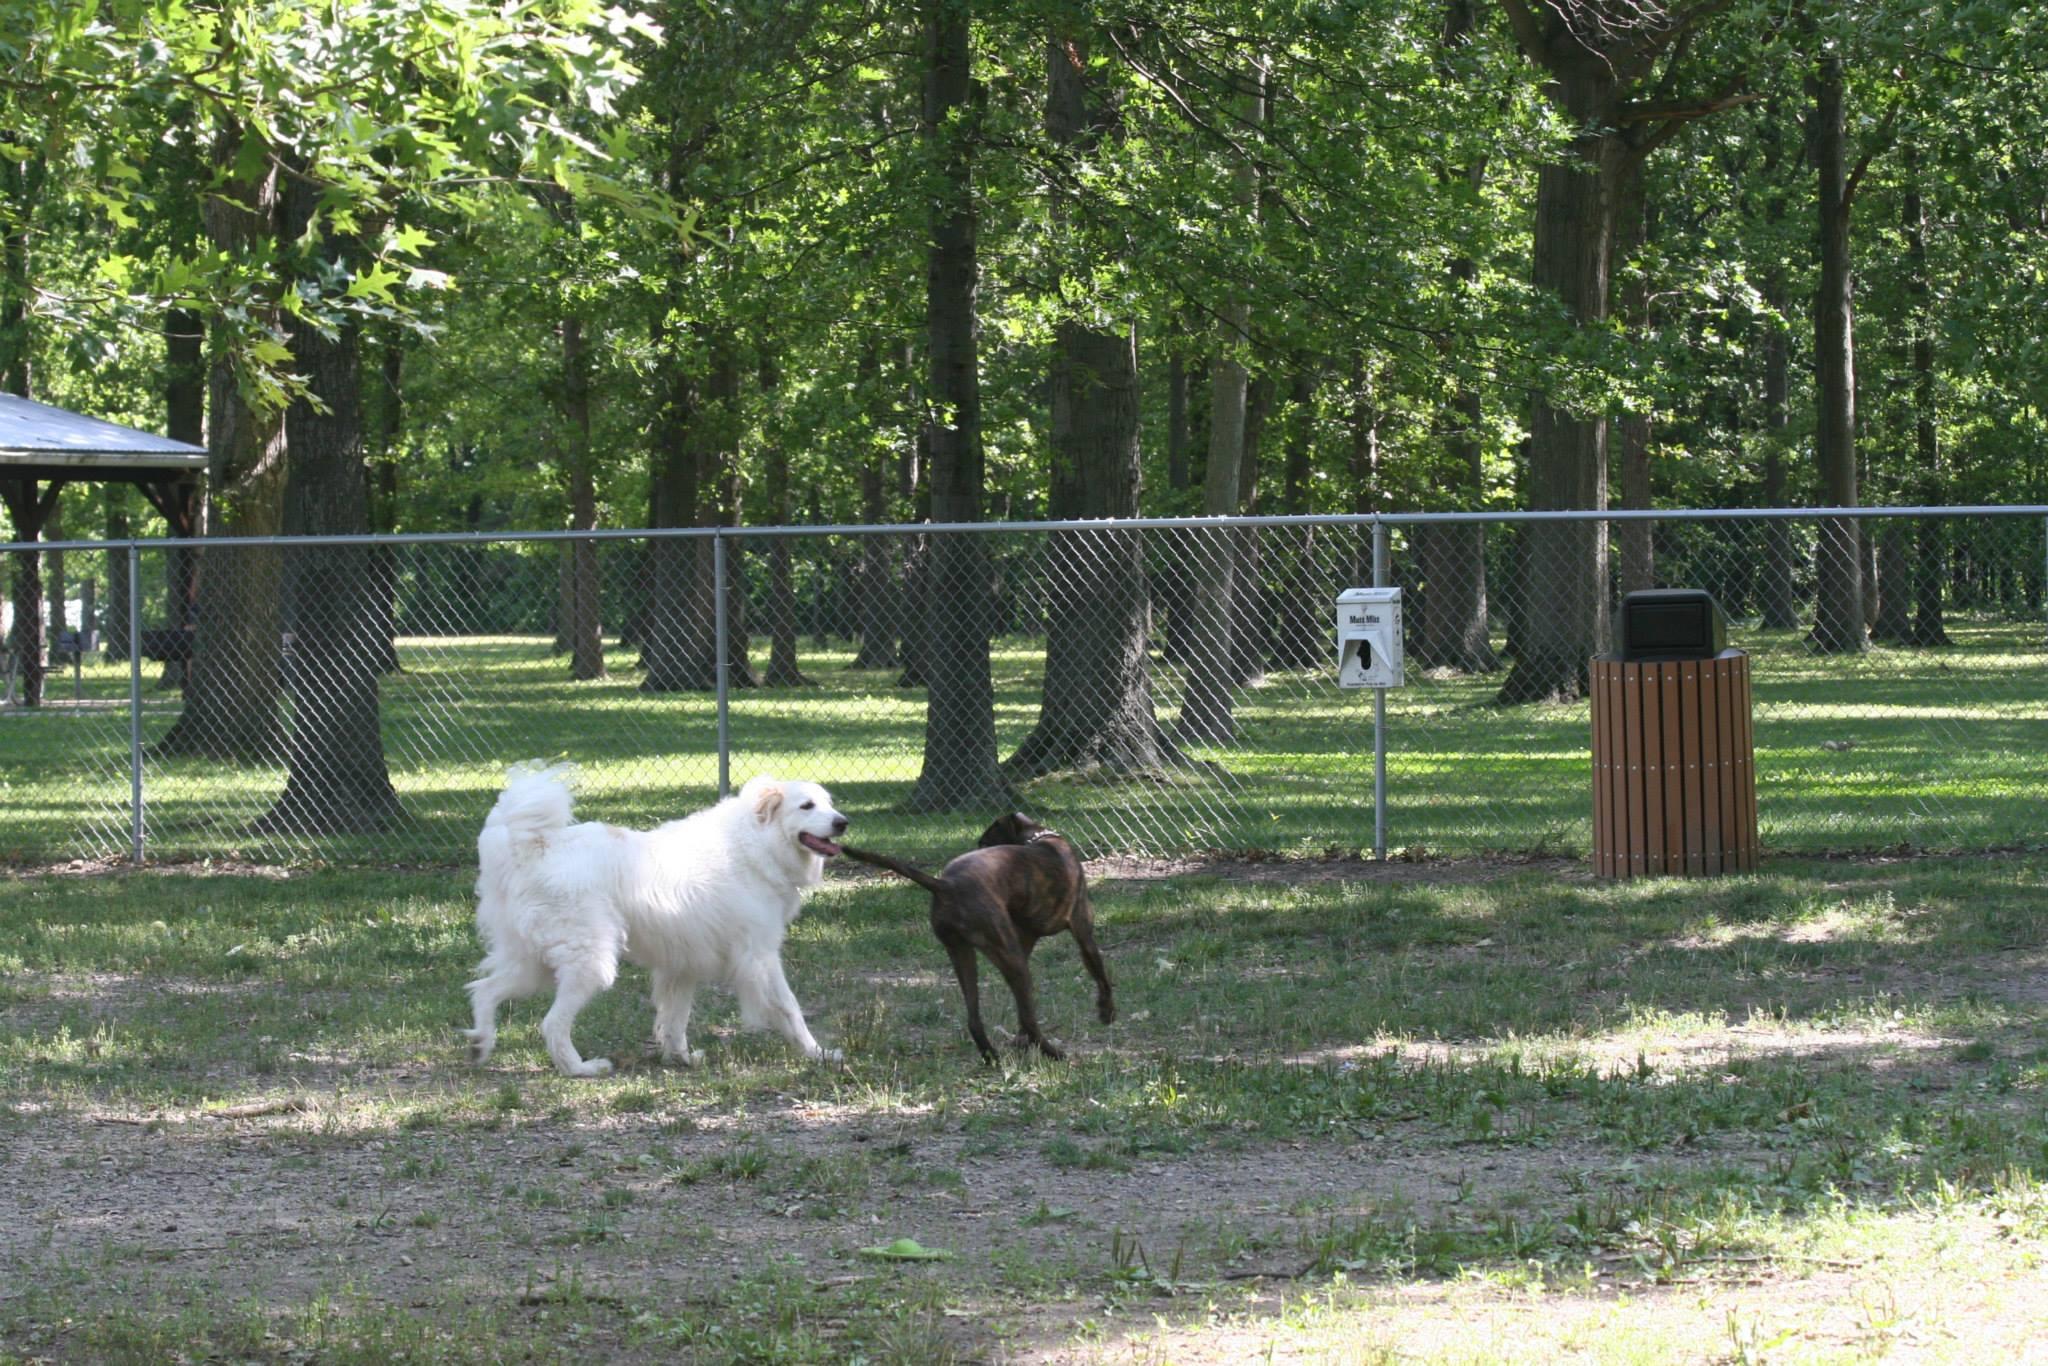 Pet Friendly Weiss Field Dog Park